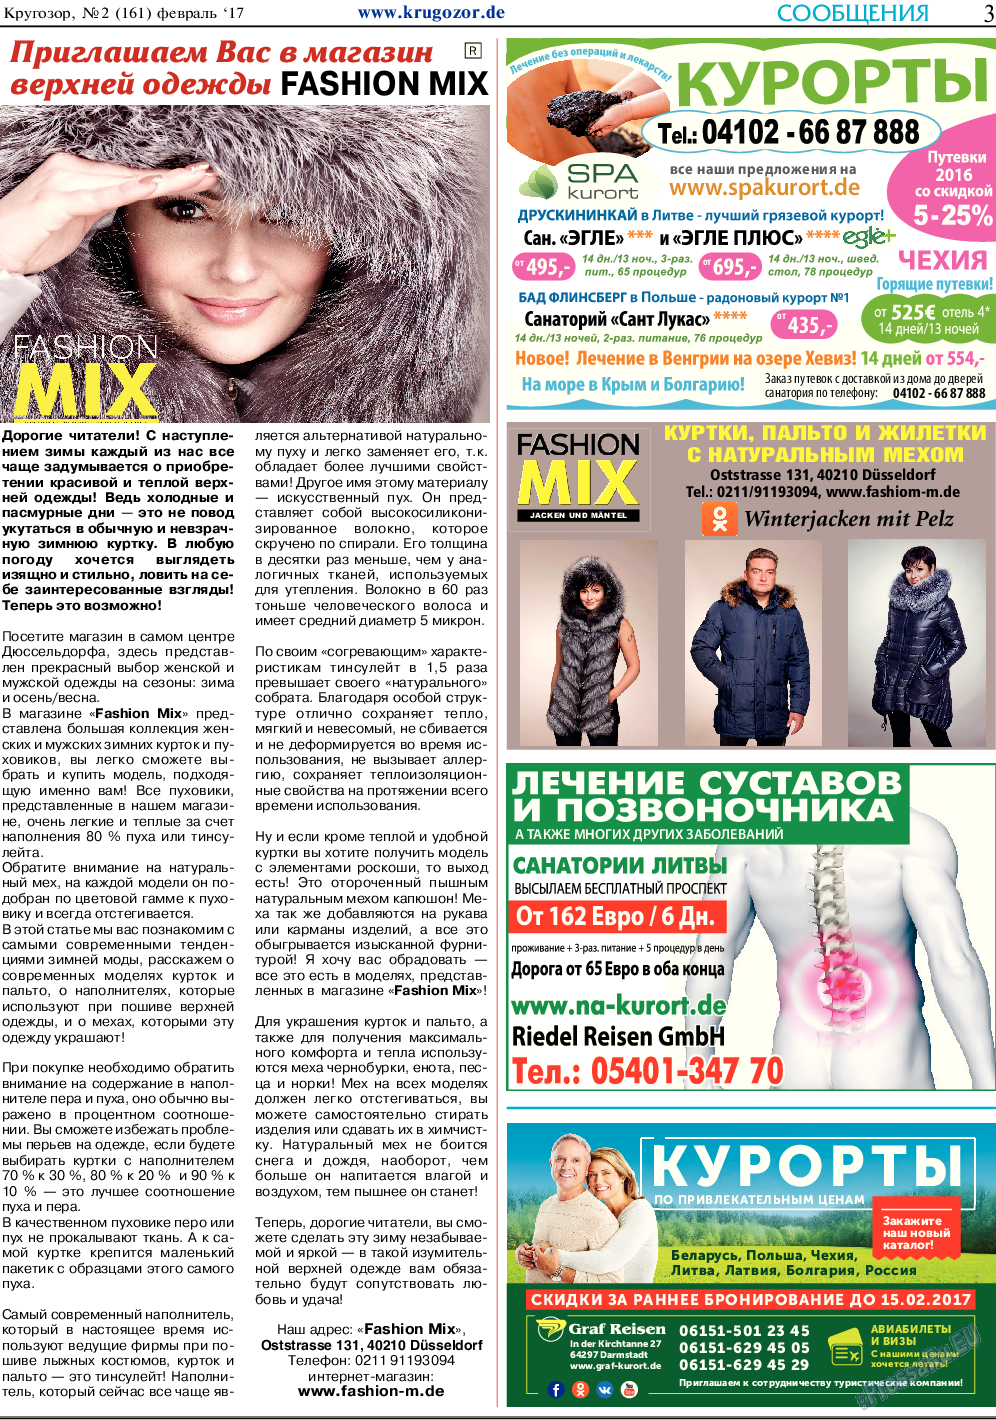 Кругозор, газета. 2017 №2 стр.3